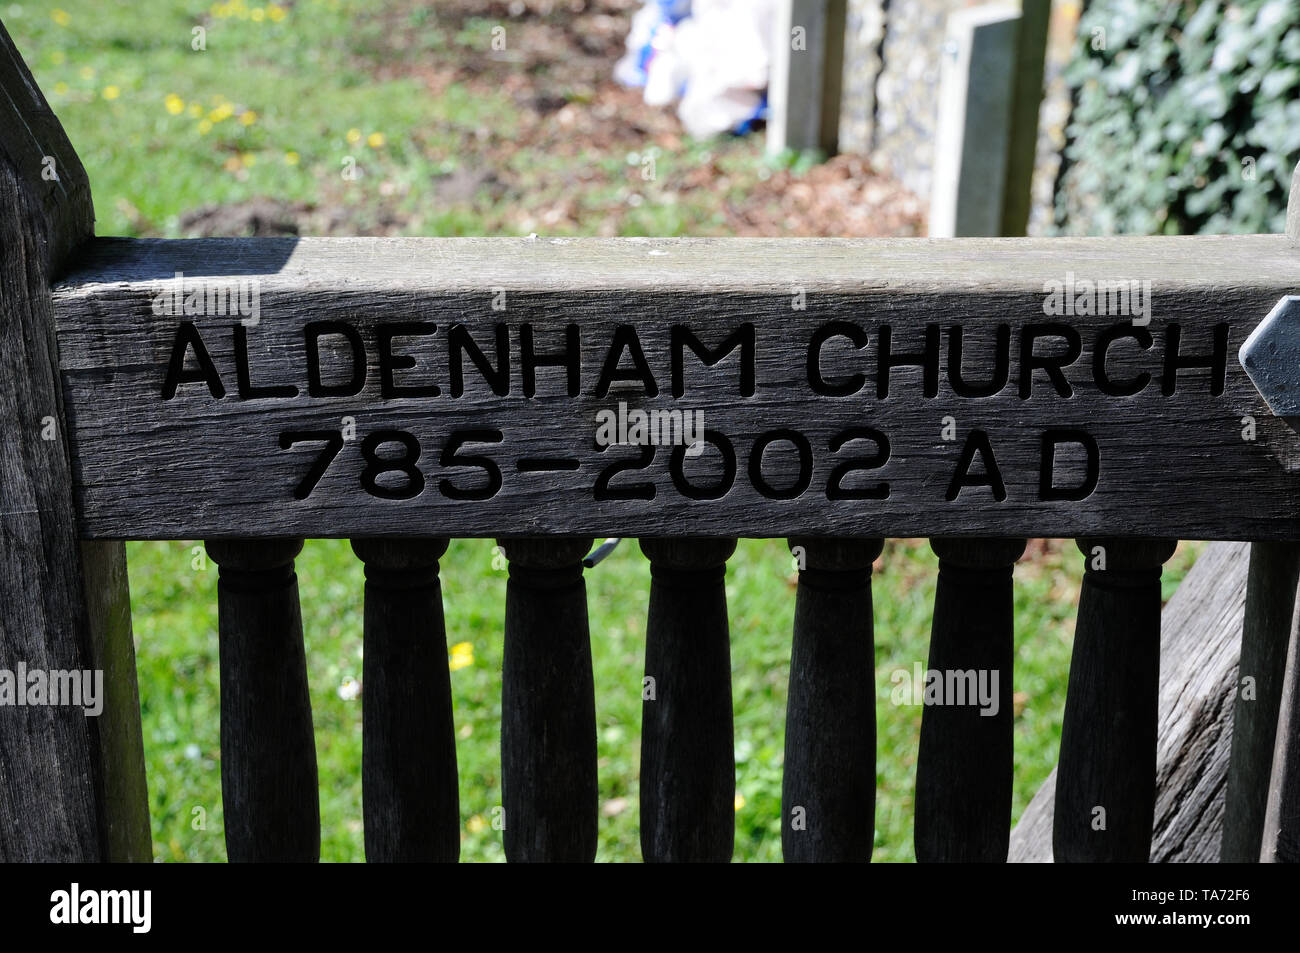 Lychgate a San Giovanni Battista, Aldenham, Hertfordshire, è inscritta 'Aldenham Chiesa 785-2002 AD' Foto Stock